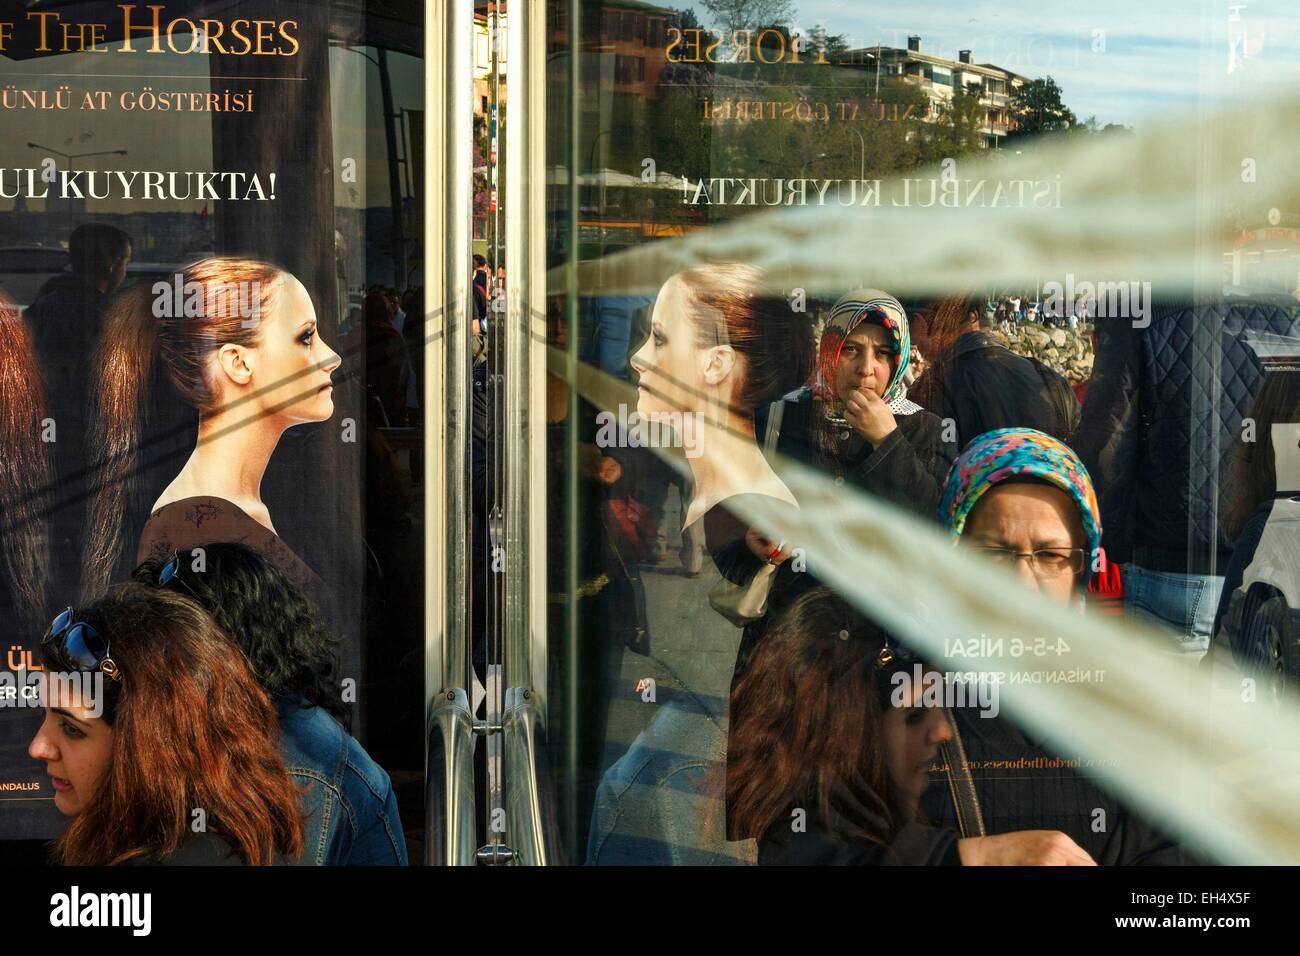 Turchia, Istanbul, Uskudar distretto, persone su un bus stop sulle rive del Bosforo Foto Stock